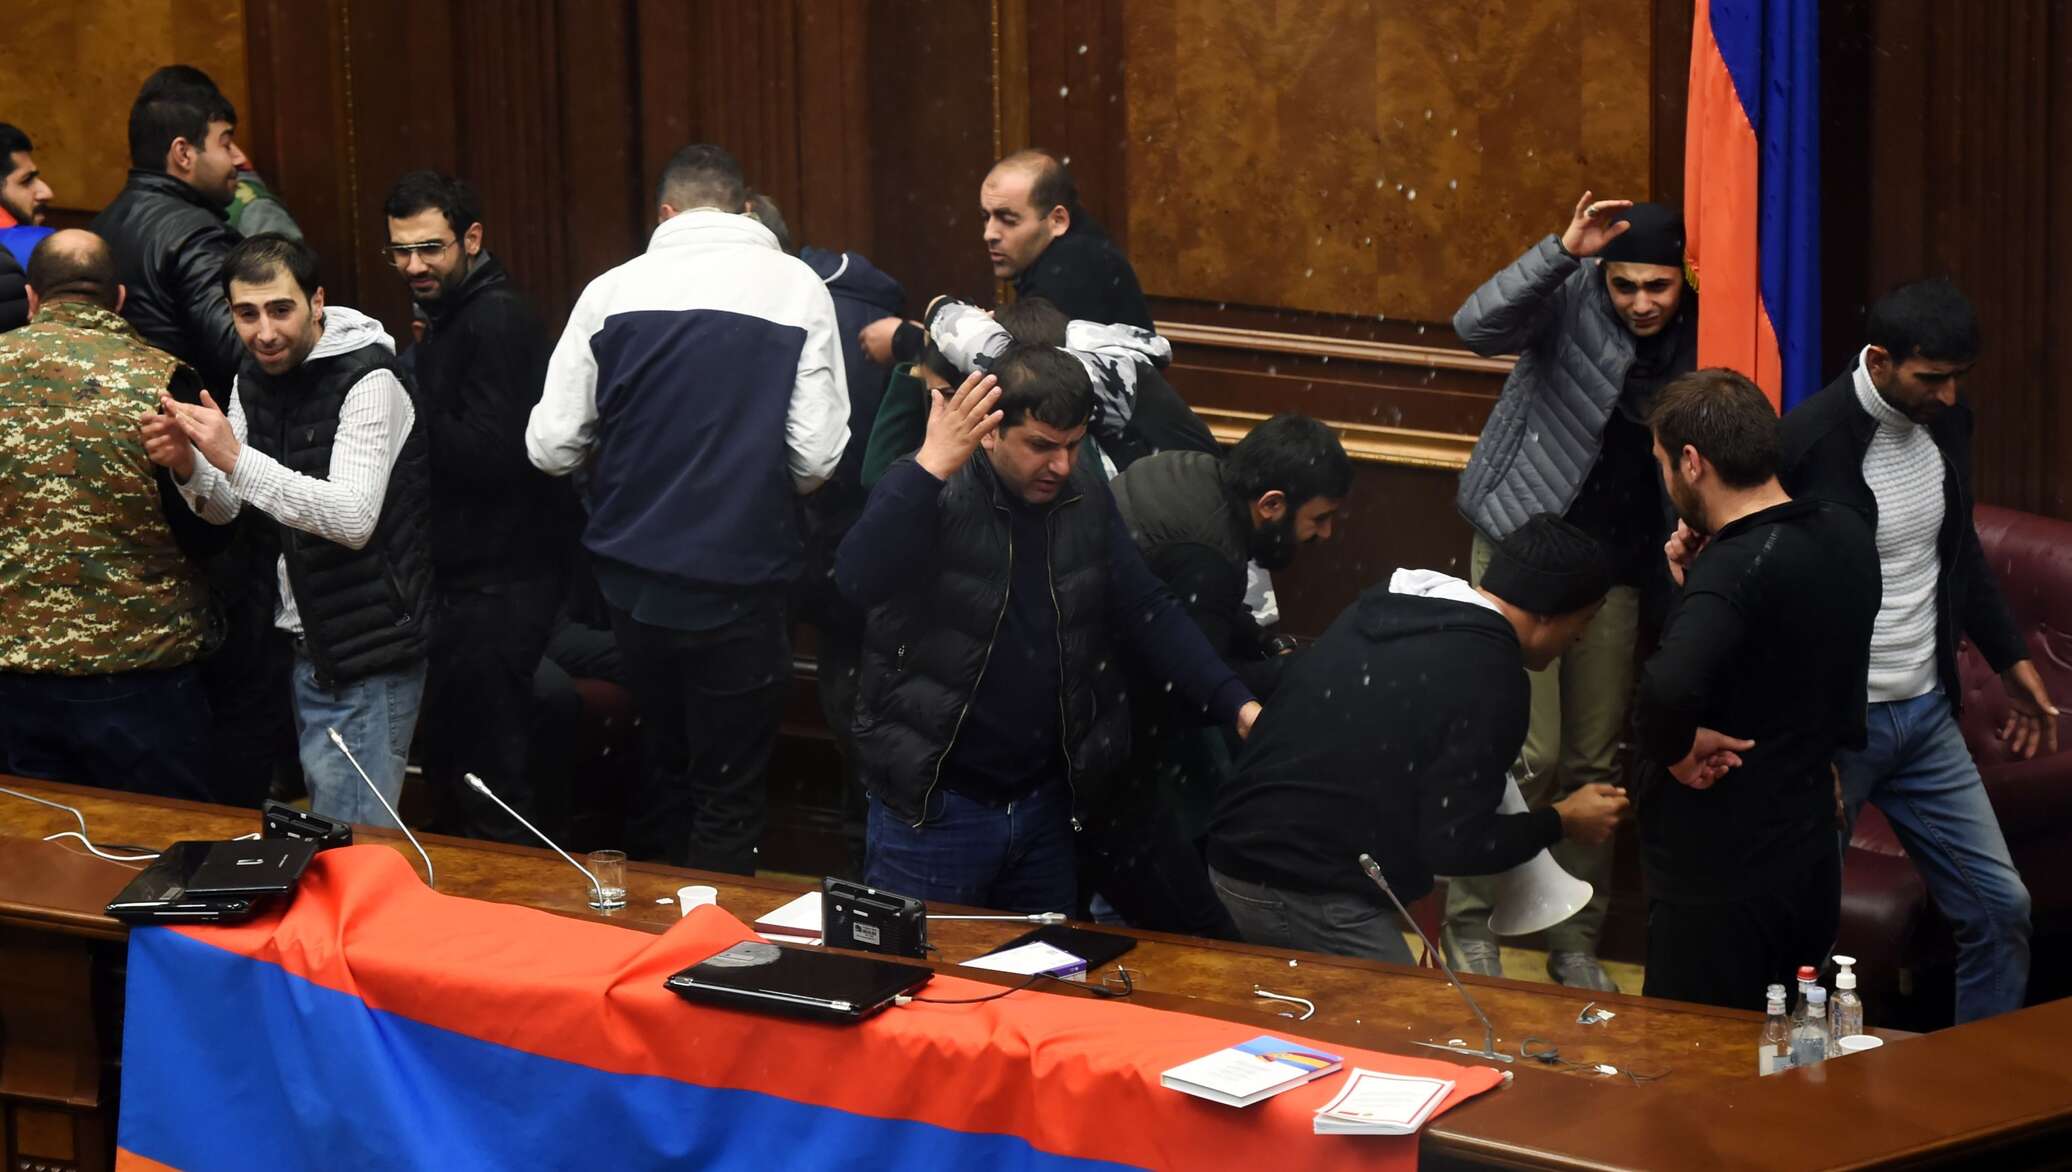 Нападение в ереване. Парламент Армении Ереван. Пашинян парламент. Пашинян 1999. Беспорядки в парламенте Армении.